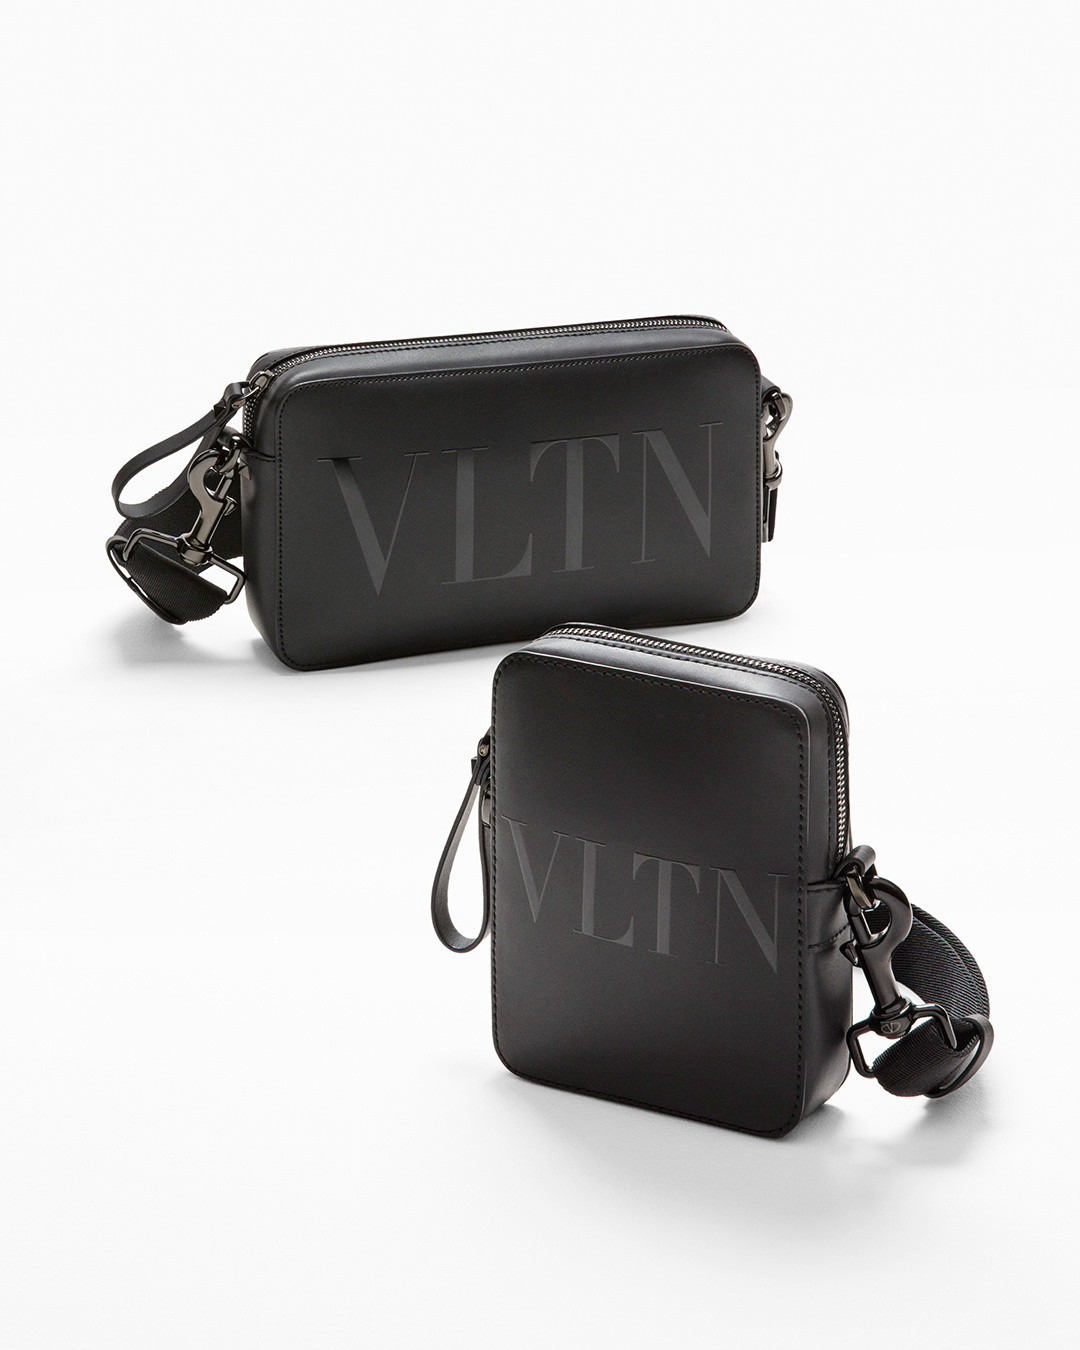 Valentino Online-Boutique: die offizielle Seite der Maison Valentino